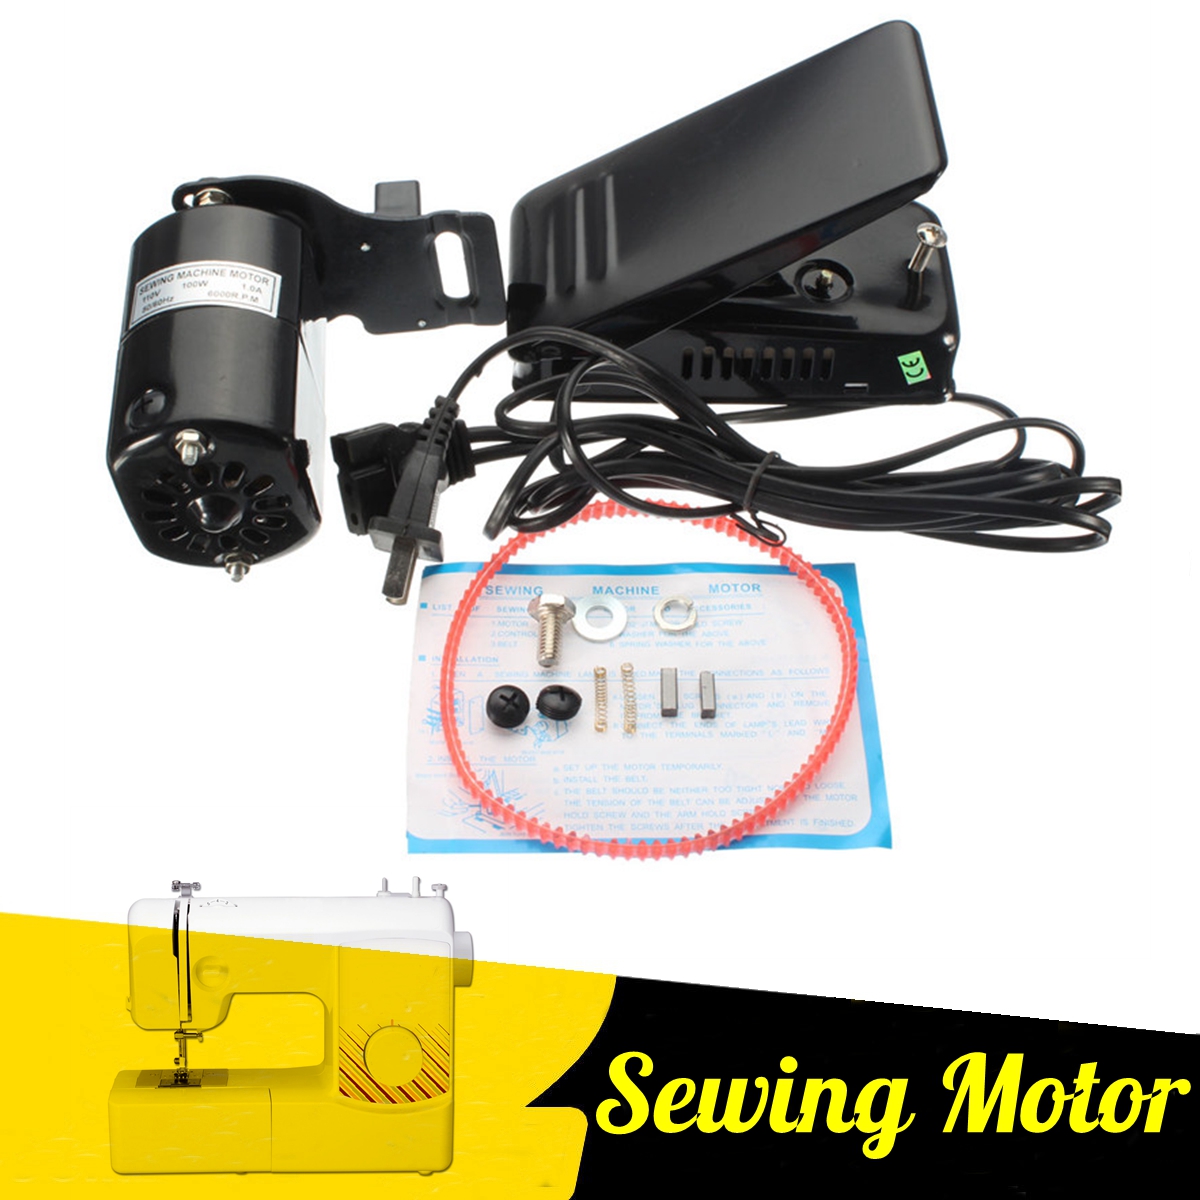 110V-Home-Sewing-Machine-10-Amp-Motor-Foot-Pedal-Controller-Repair-6000rmp-Tools-Kit-1578287-1